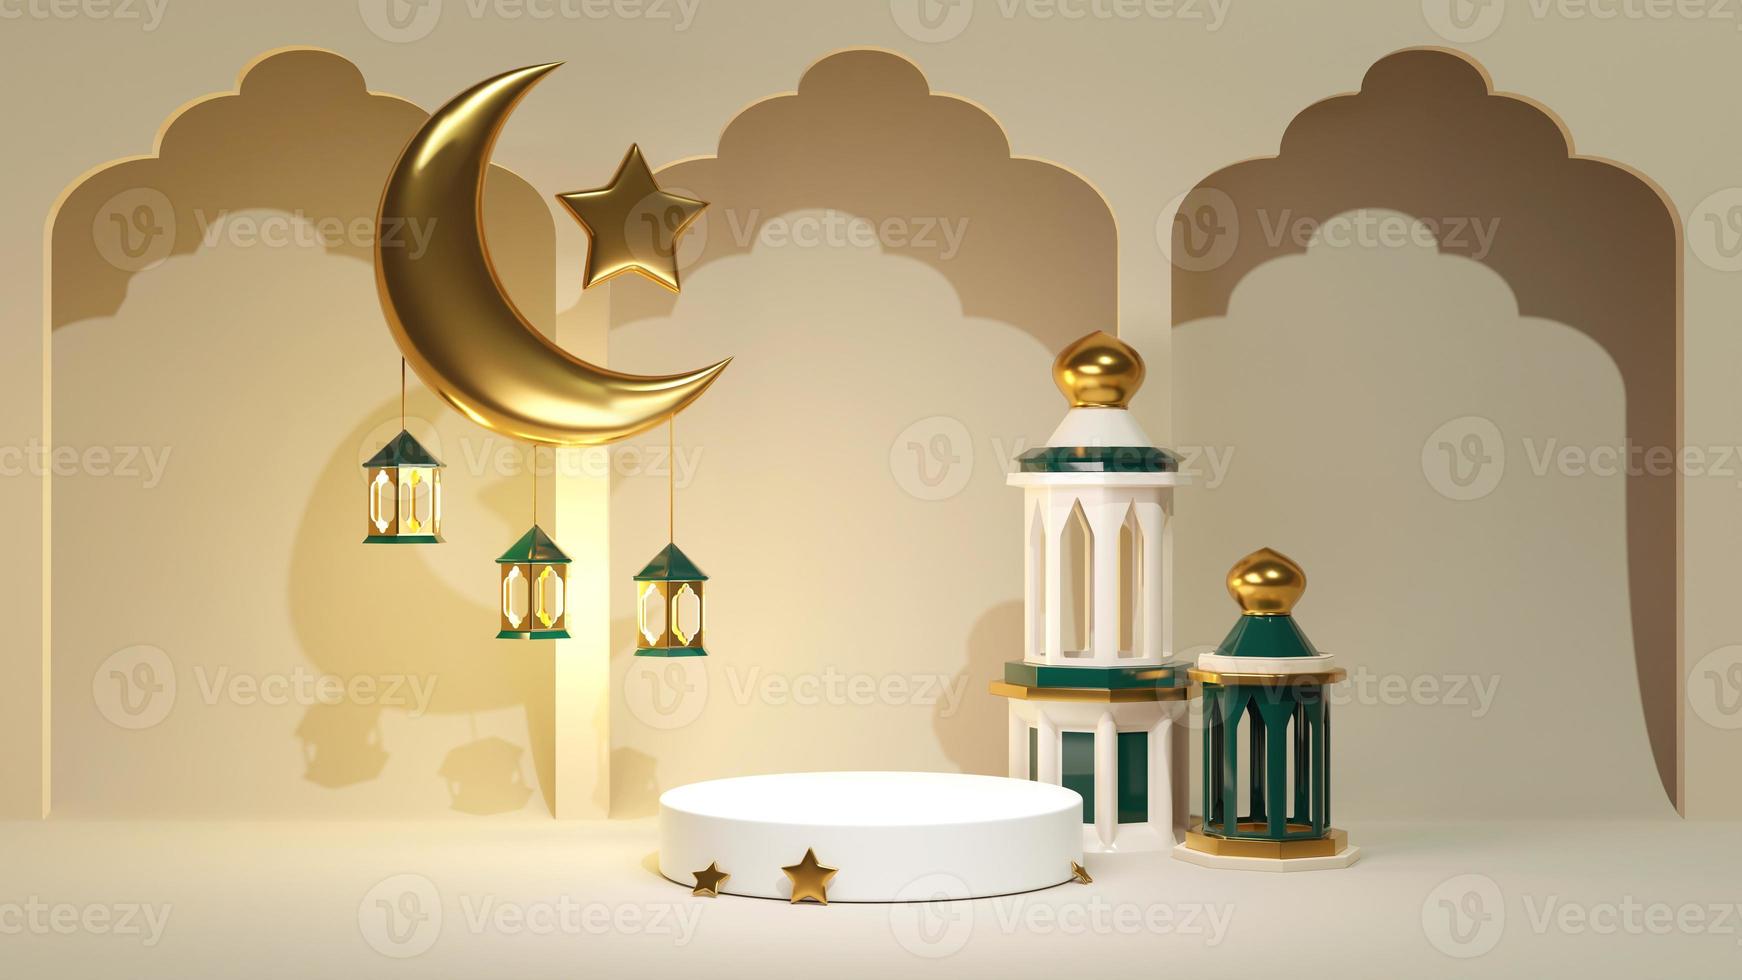 rendu 3d fond de célébration du ramadan kareem pour la bannière publicitaire. porte-bijoux avec croissant doré islamique et étoile avec arc. décoration arabe et mosquée près du socle d'affichage du produit photo